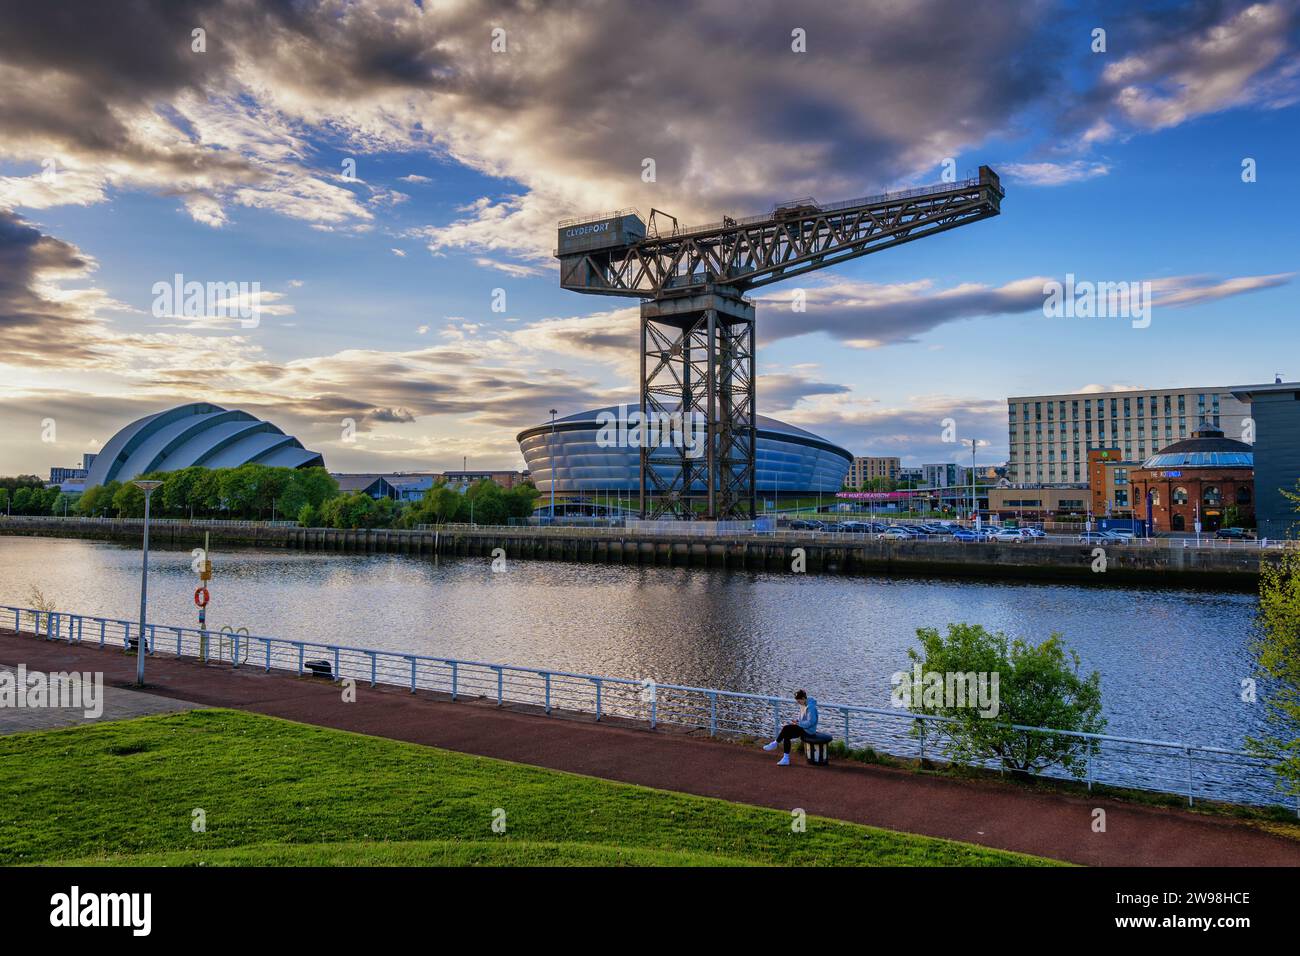 Der Finnieston Crane und die OVO Hydro Indoor Arena am River Clyde in Glasgow, Schottland, Großbritannien. Stockfoto